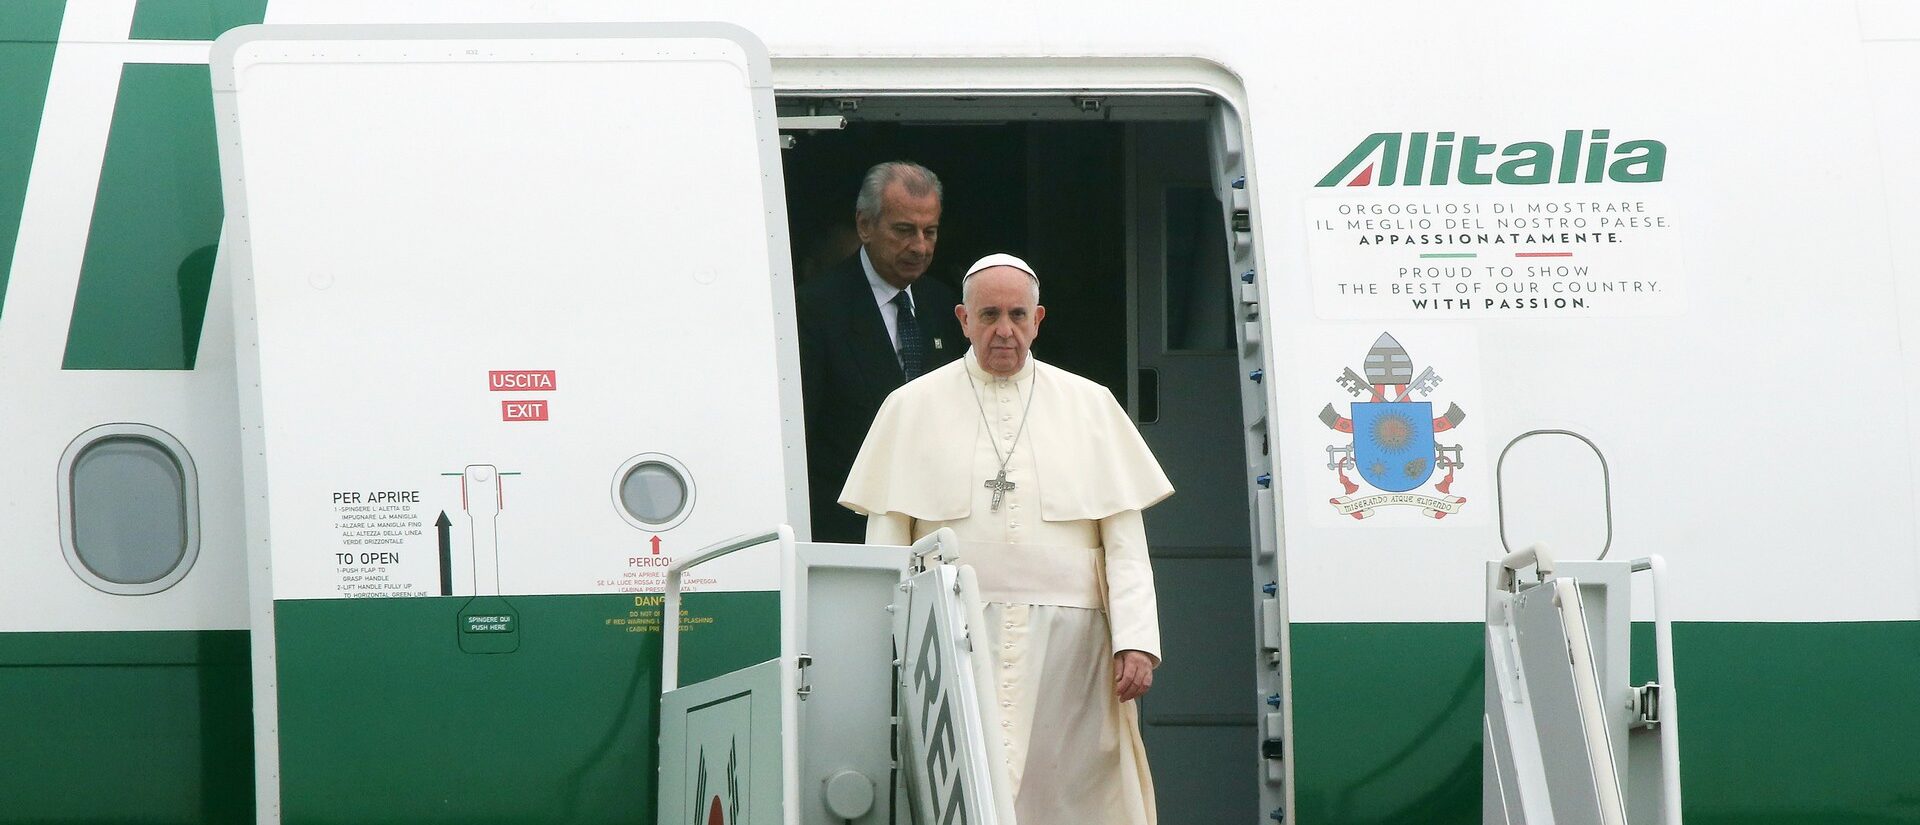 Le pape François arrivera le 2 août 2023 à Lisbonne | photo d'illustration © Jun-Soo-Un/Flickr CC BY-SA 2.0